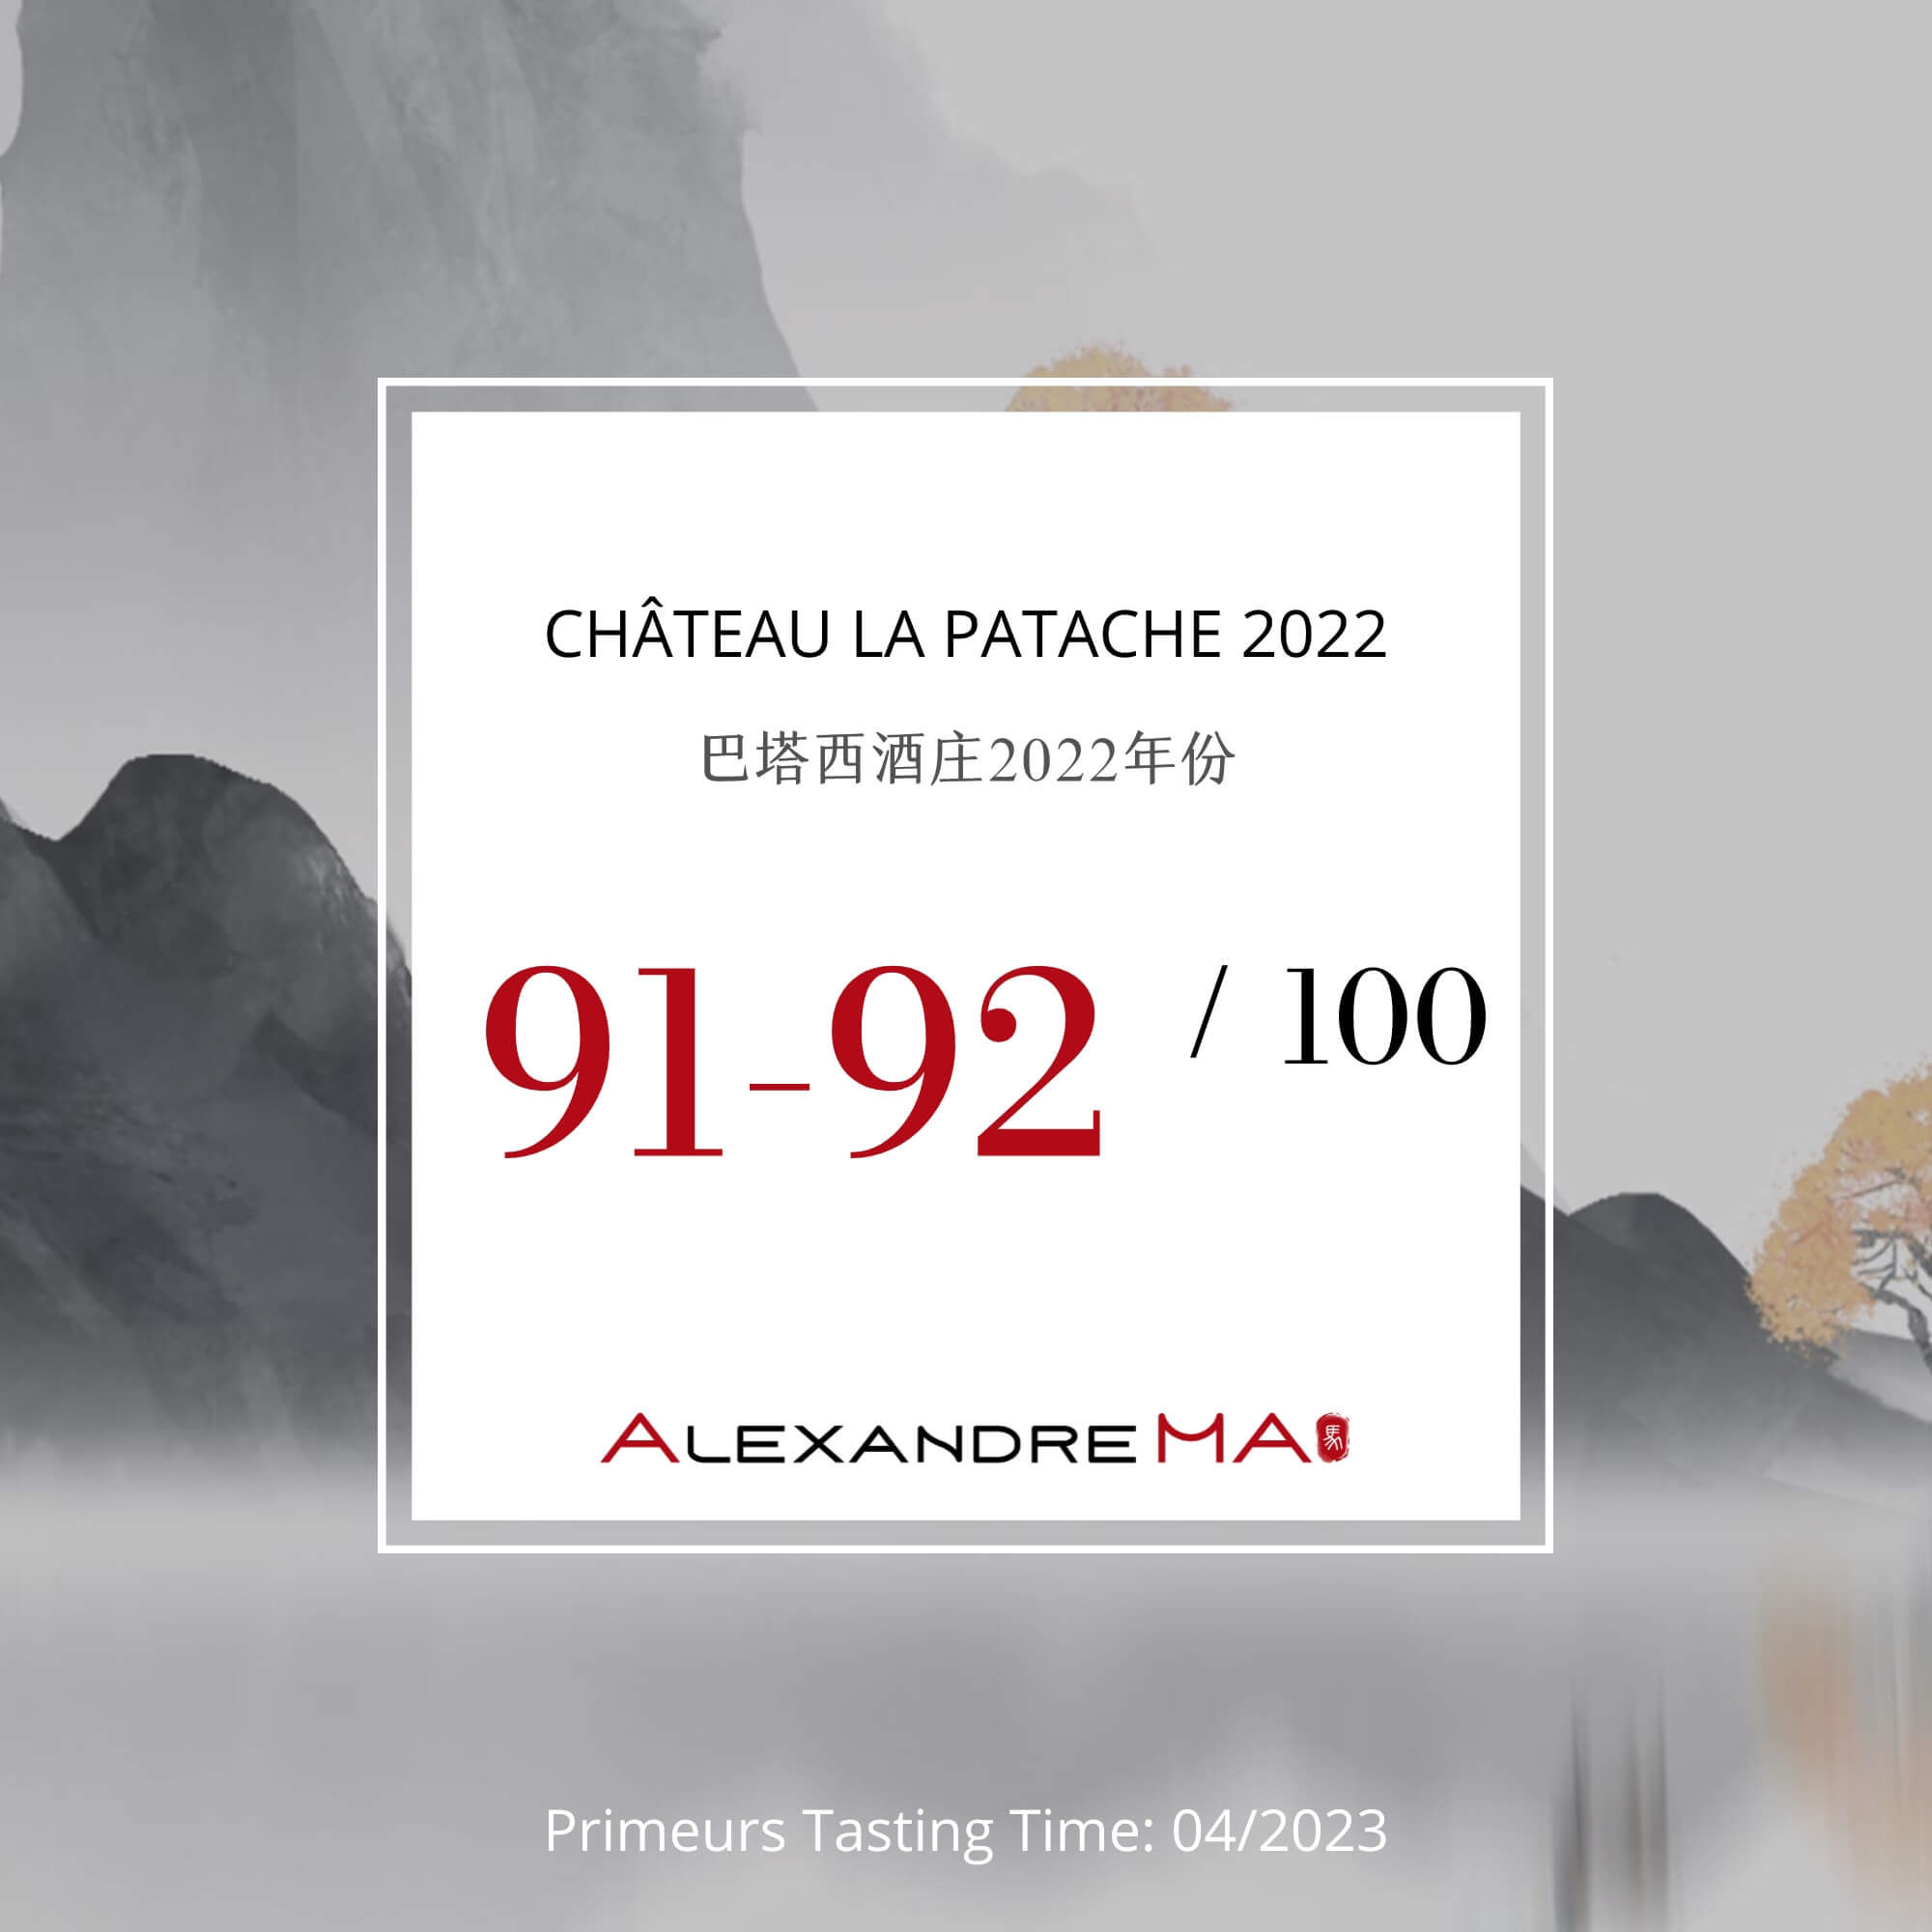 Château La Patache 2022 Primeurs - Alexandre MA